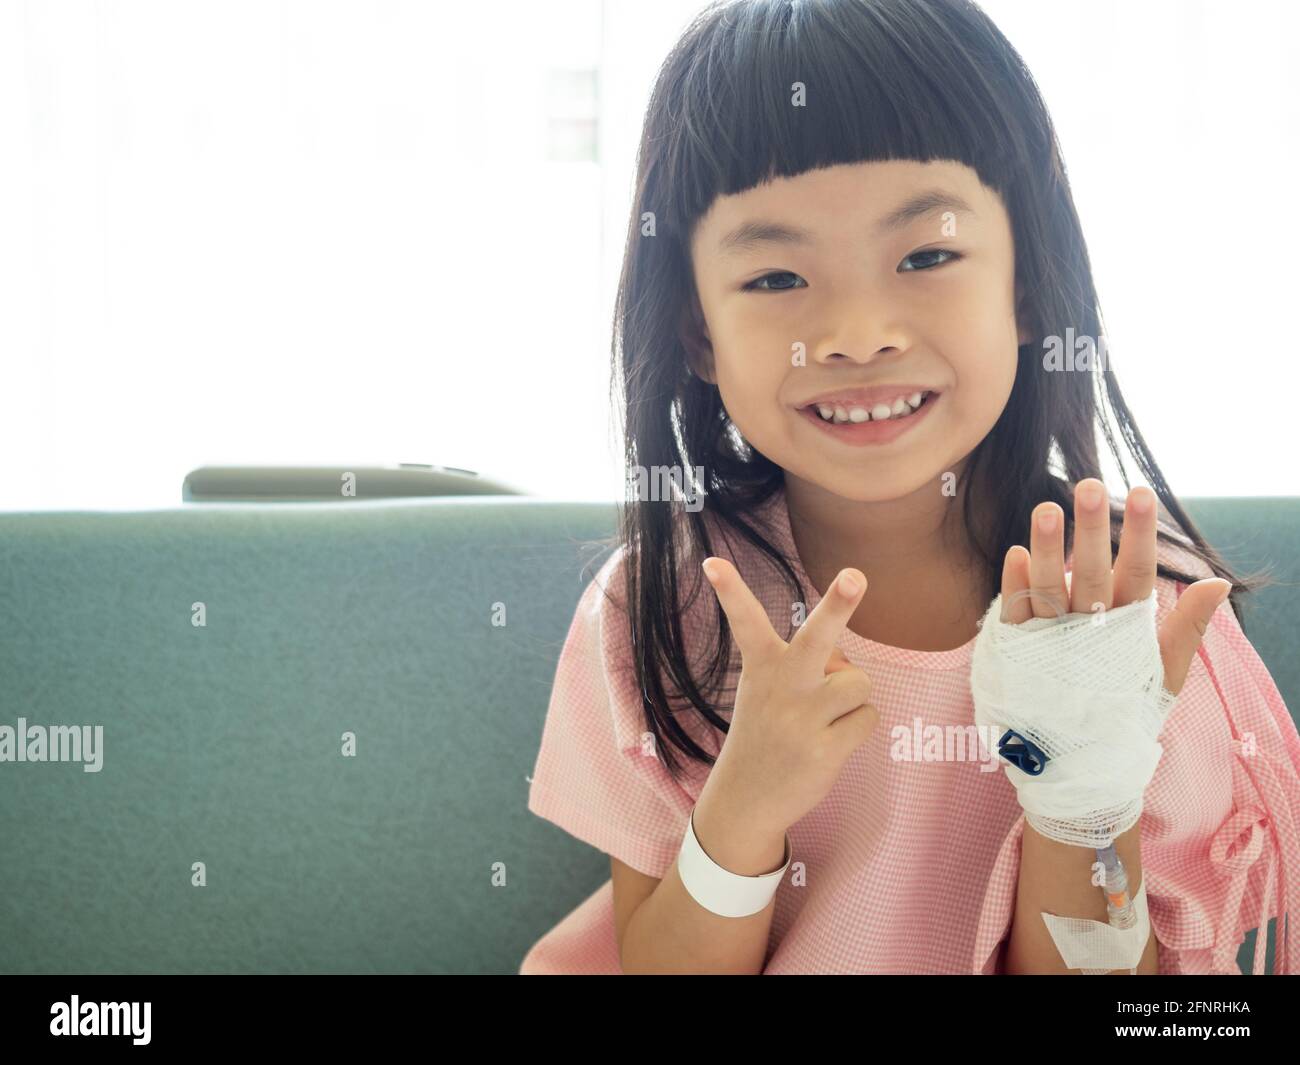 Fille asiatique assise sur le lit d'hôpital, montrant deux doigts. Image positive de l'enfant du patient à l'hôpital. Banque D'Images